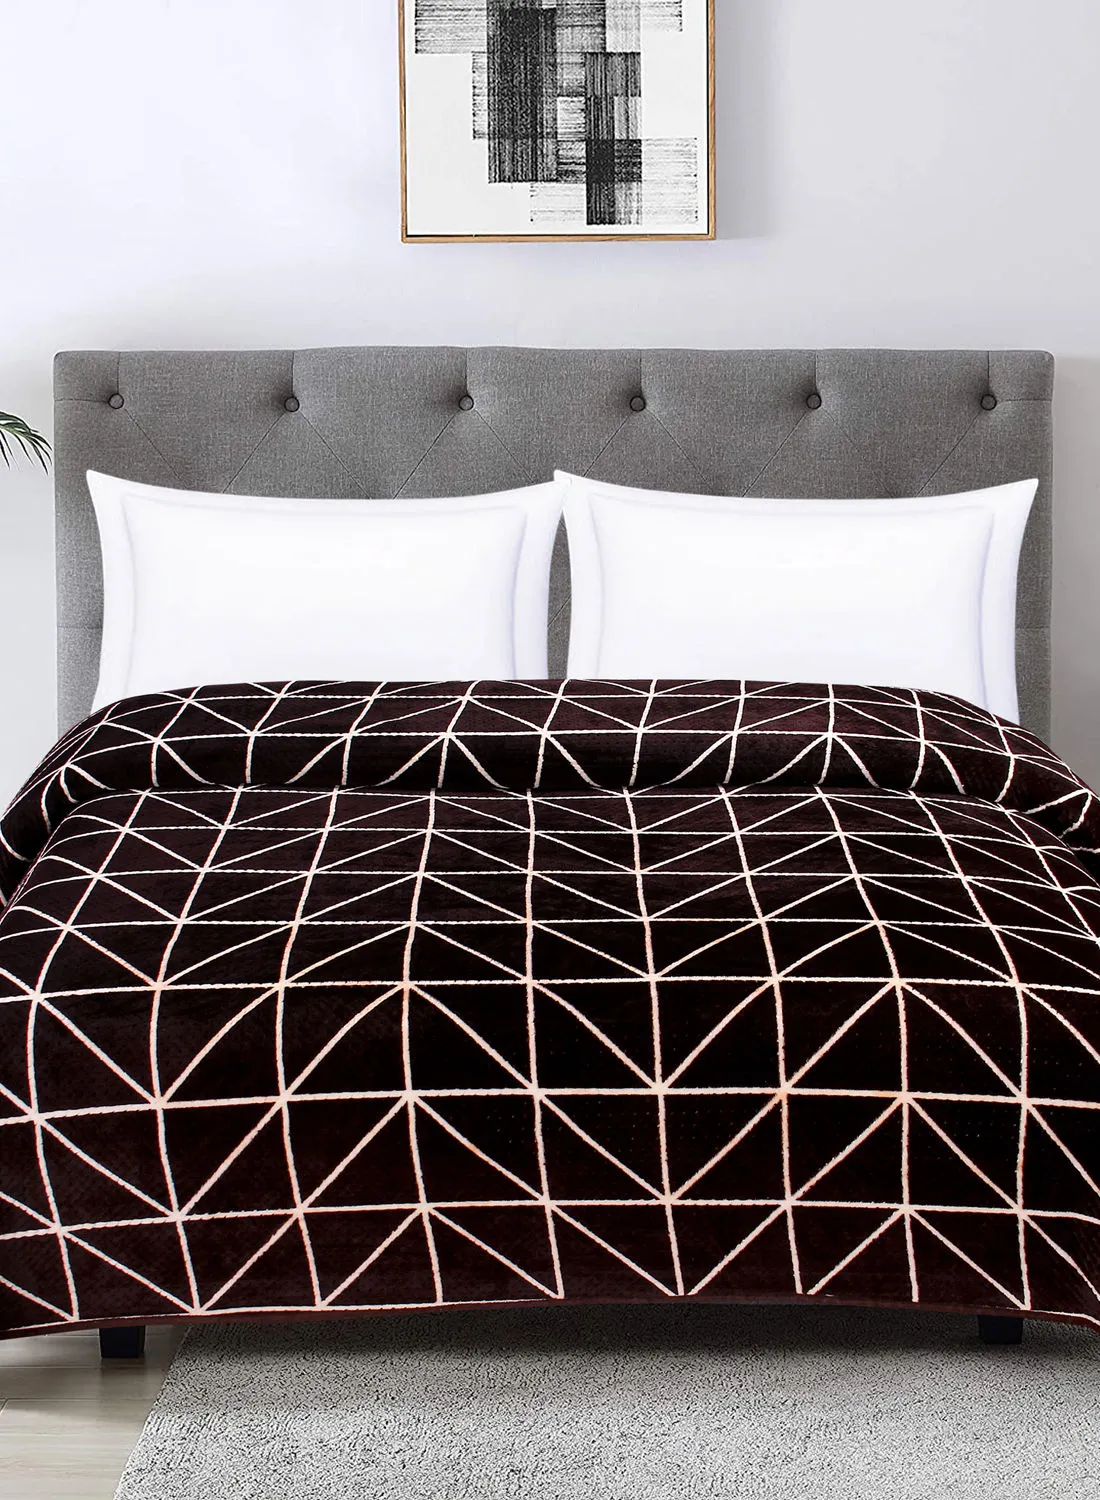 Hometown Light Blanket - 160X220 Cm - Geometric Lined Brown 100% Poyester Ultra Plush For Sofa Or Bedroom